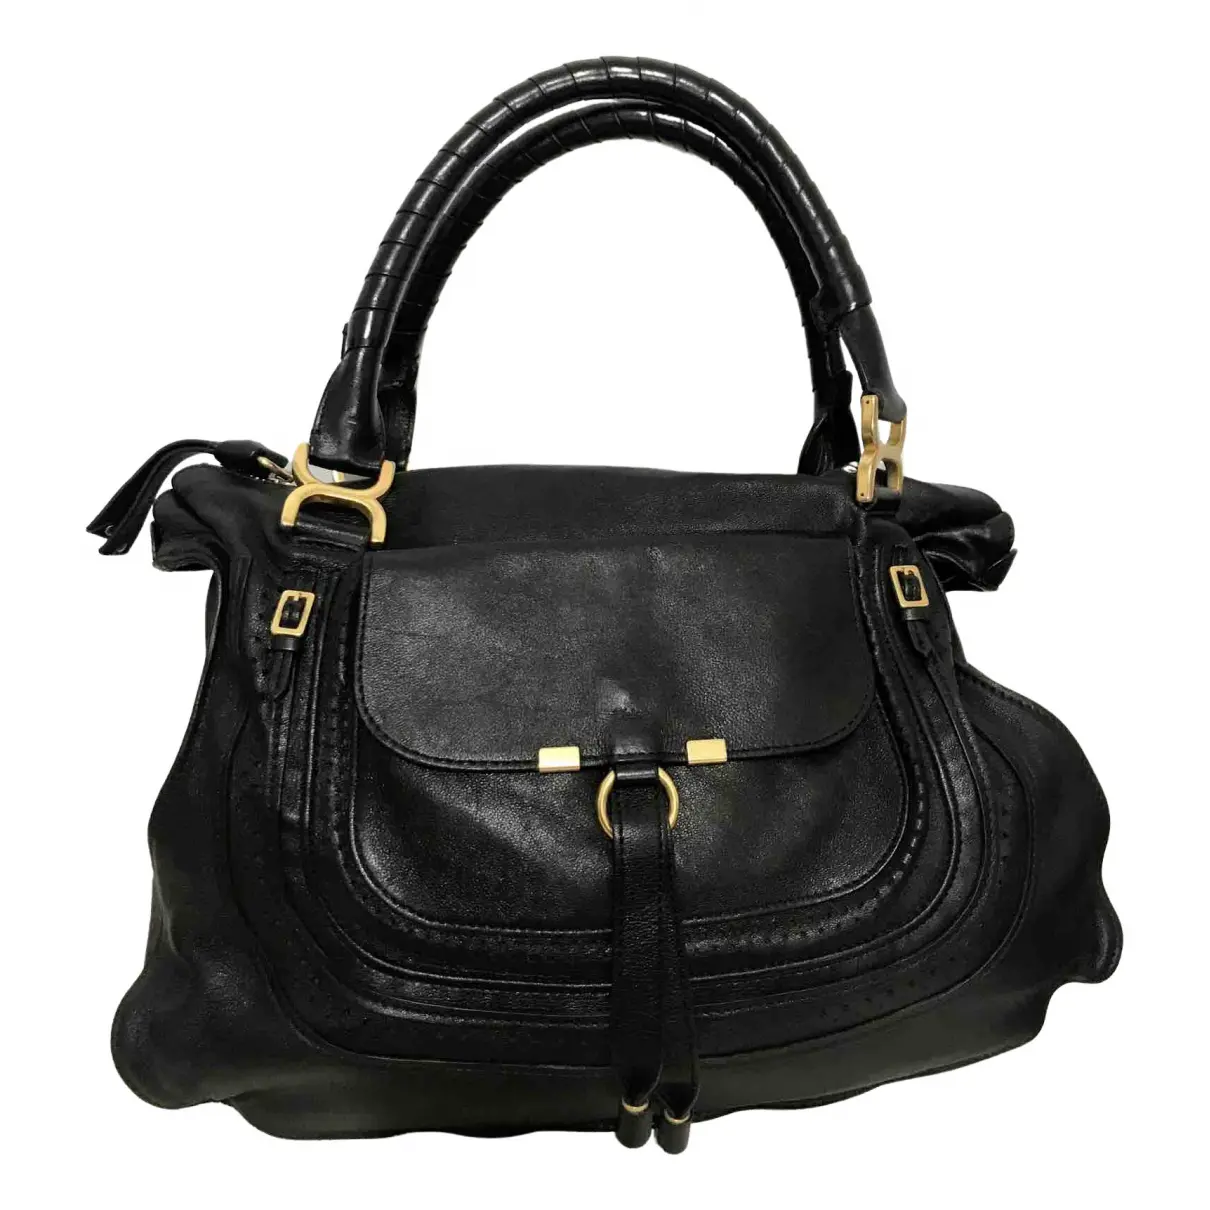 Marcie leather handbag Chloé